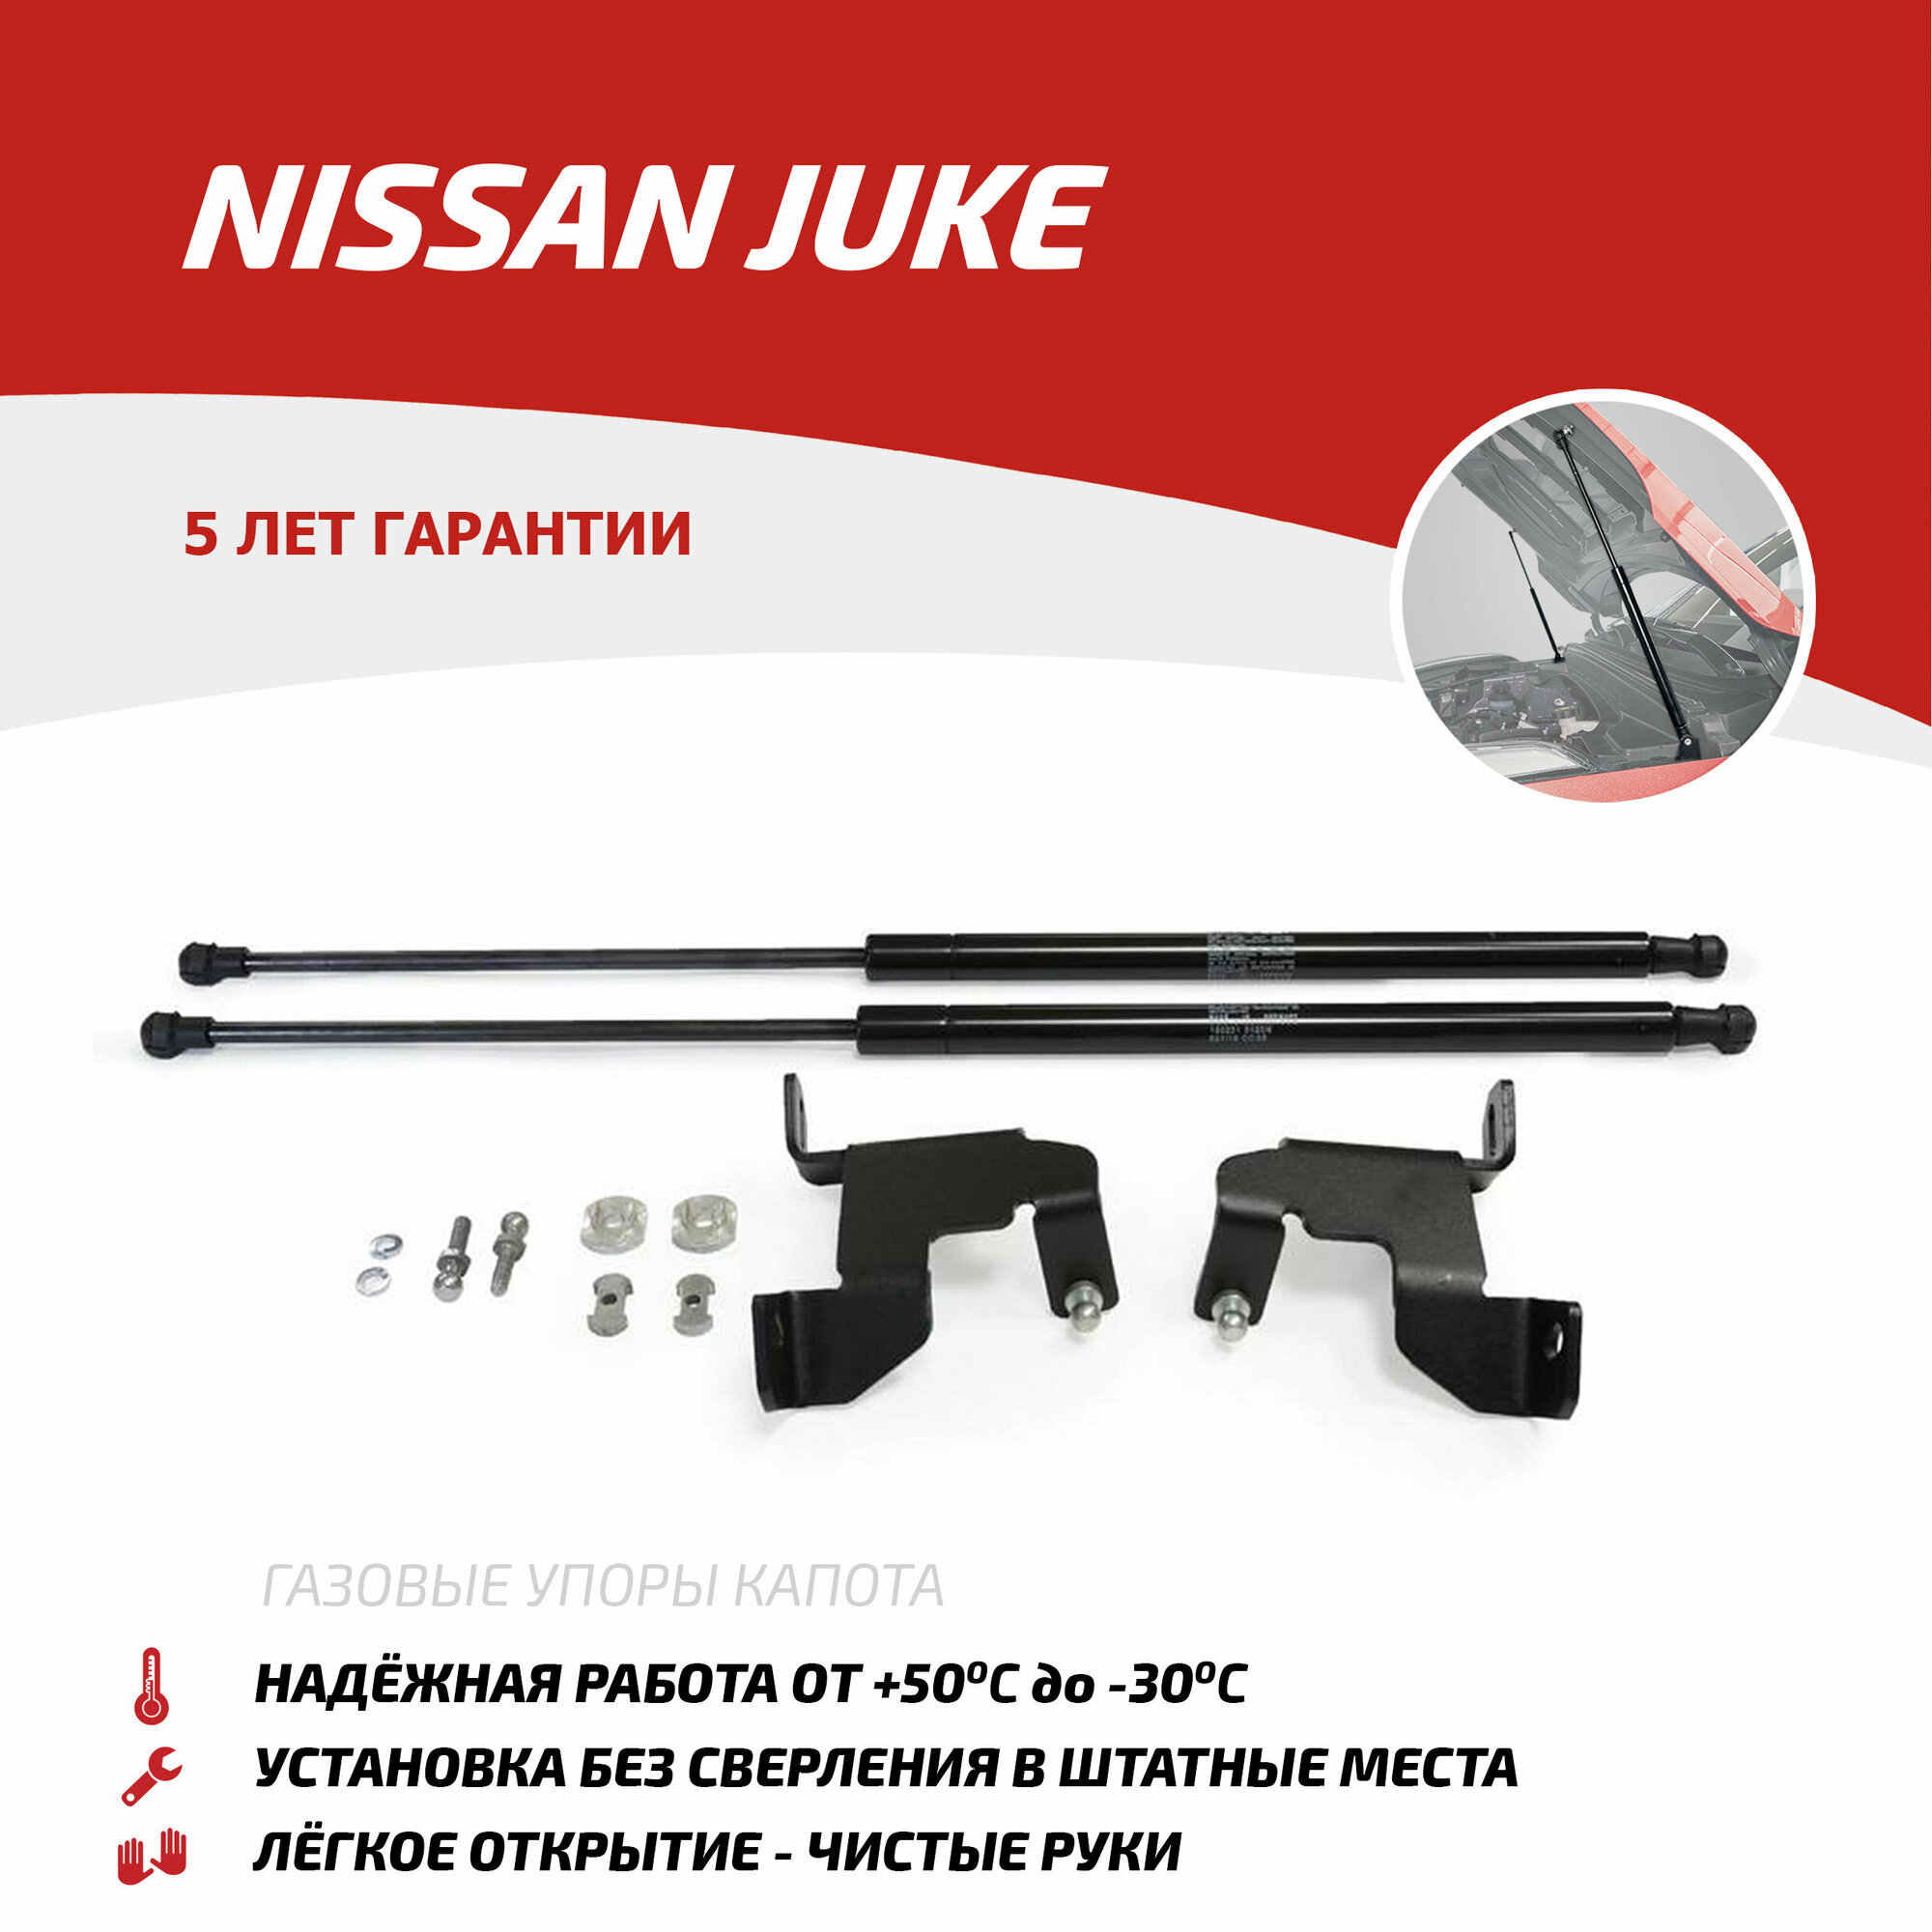 Газовые упоры капота АвтоУпор для Nissan Juke 2010-2014 2014-н. в 2 шт UNIJUK012 - Автоупор арт. UNIJUK012